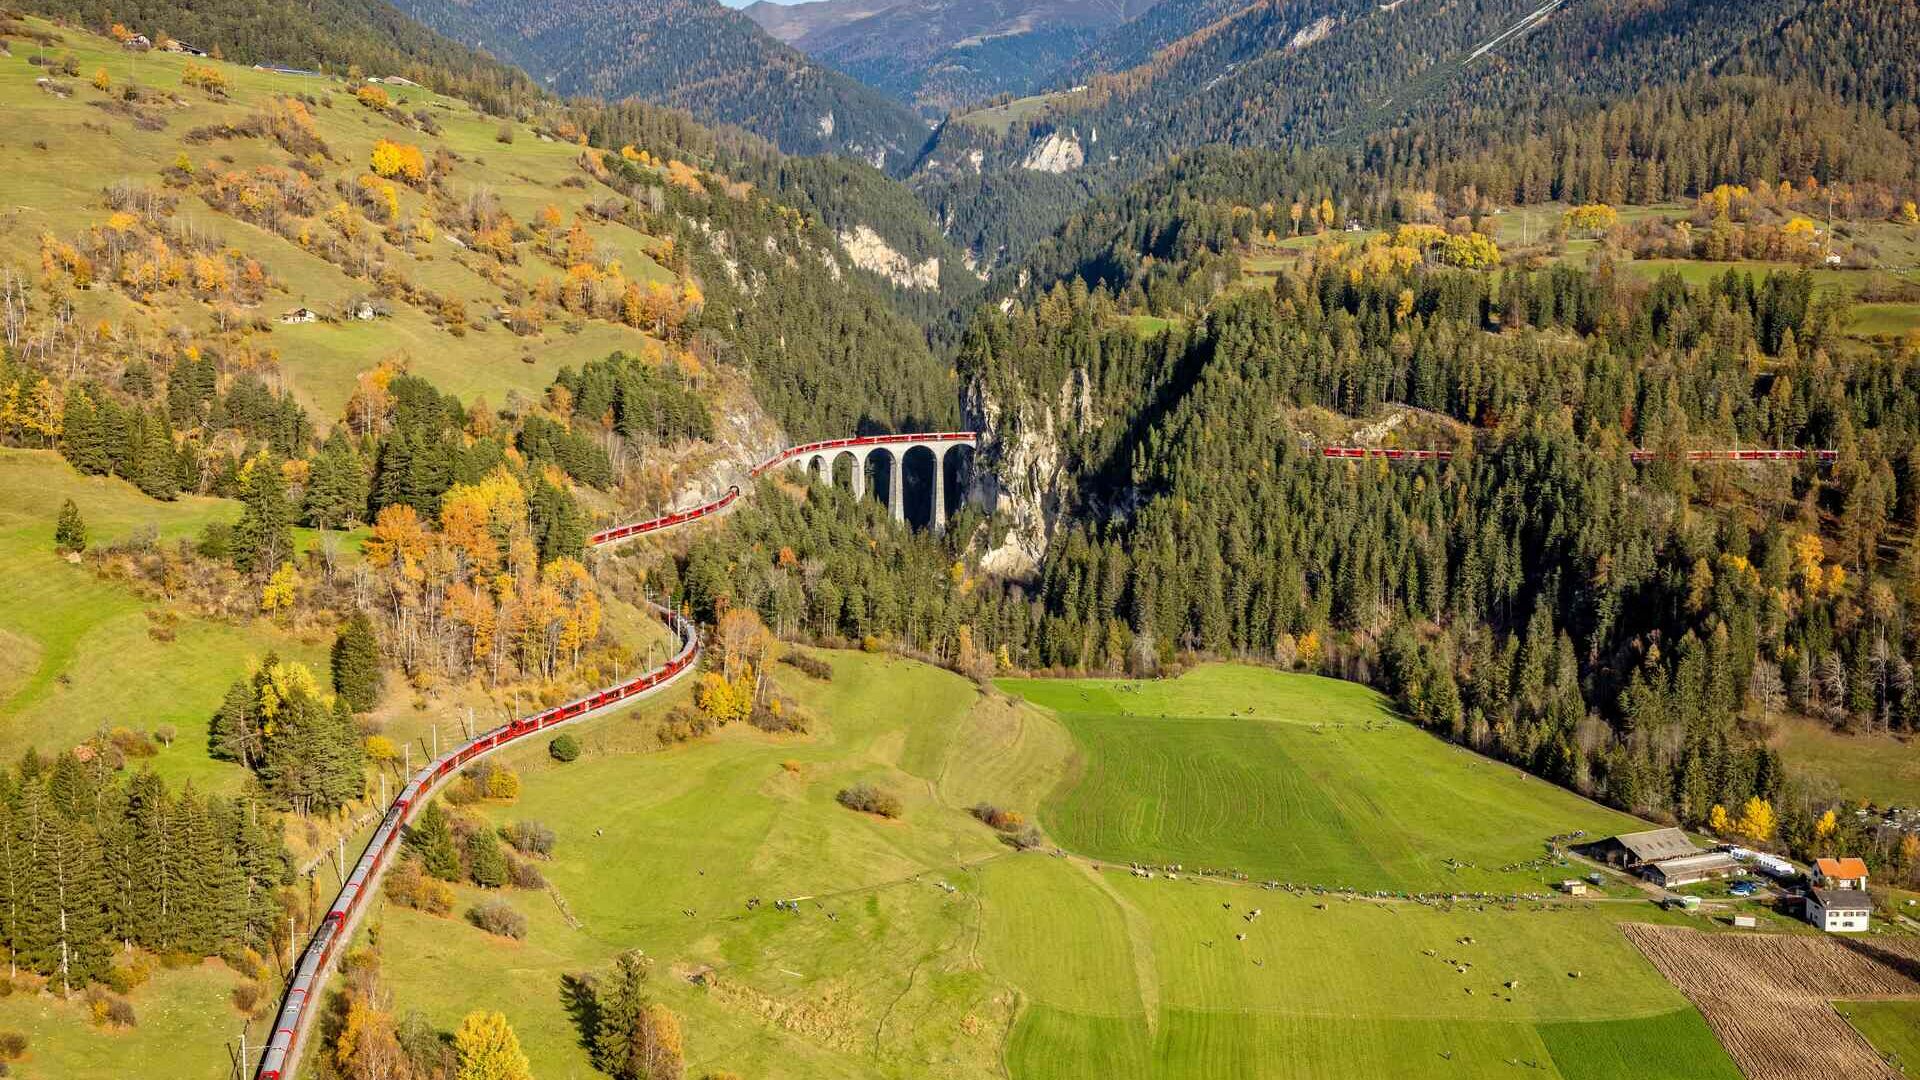 's Werelds langste smalspoortrein op de Albula-lijn van de Rhätische Bahn in Zwitserland op 29 oktober 2022 (Foto: Andy Mettler/Swiss-Image)